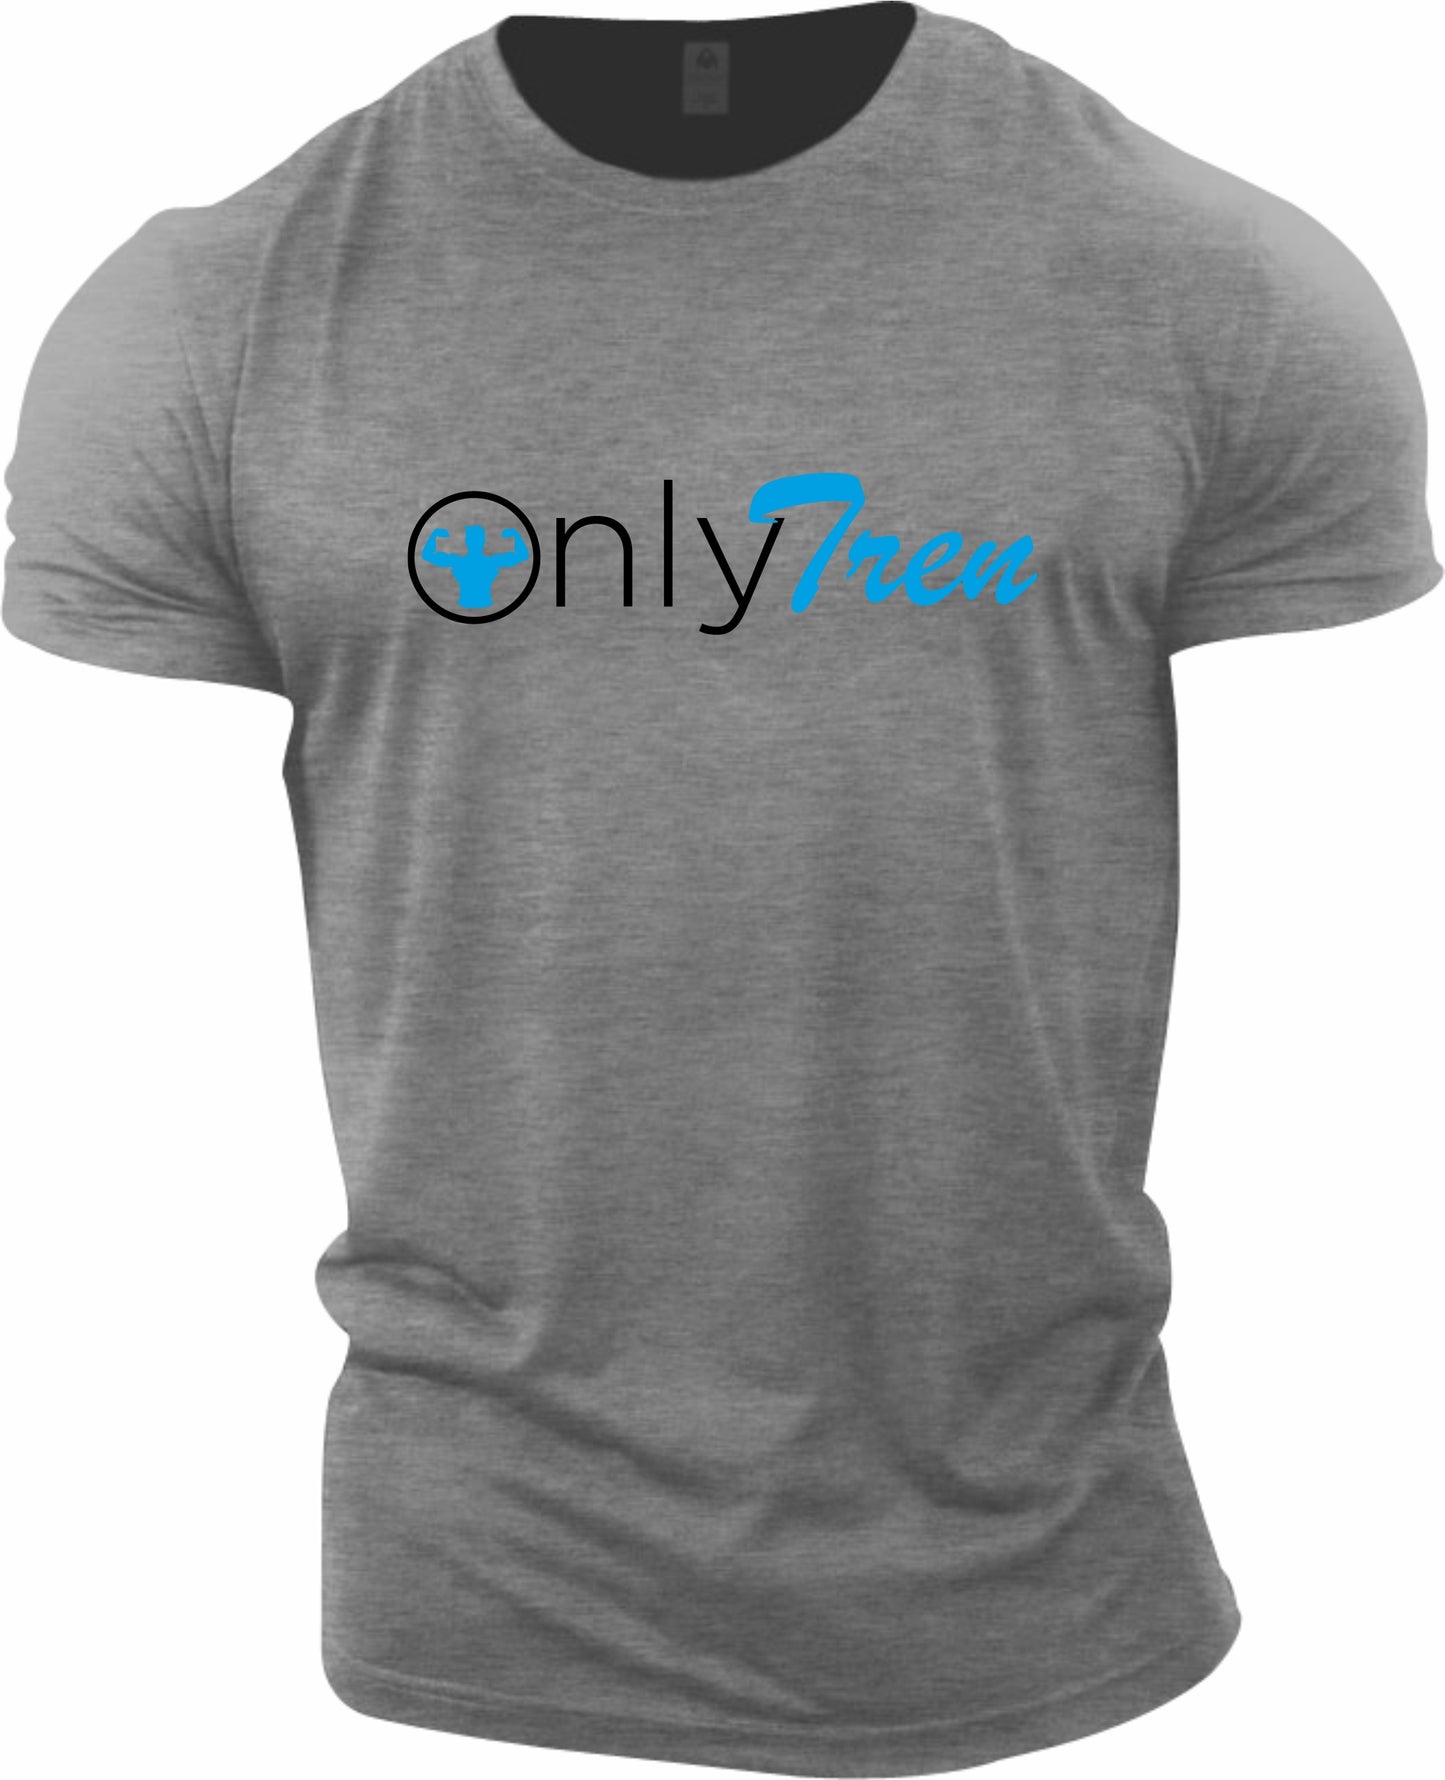 OnlyTren Gym T-Shirt